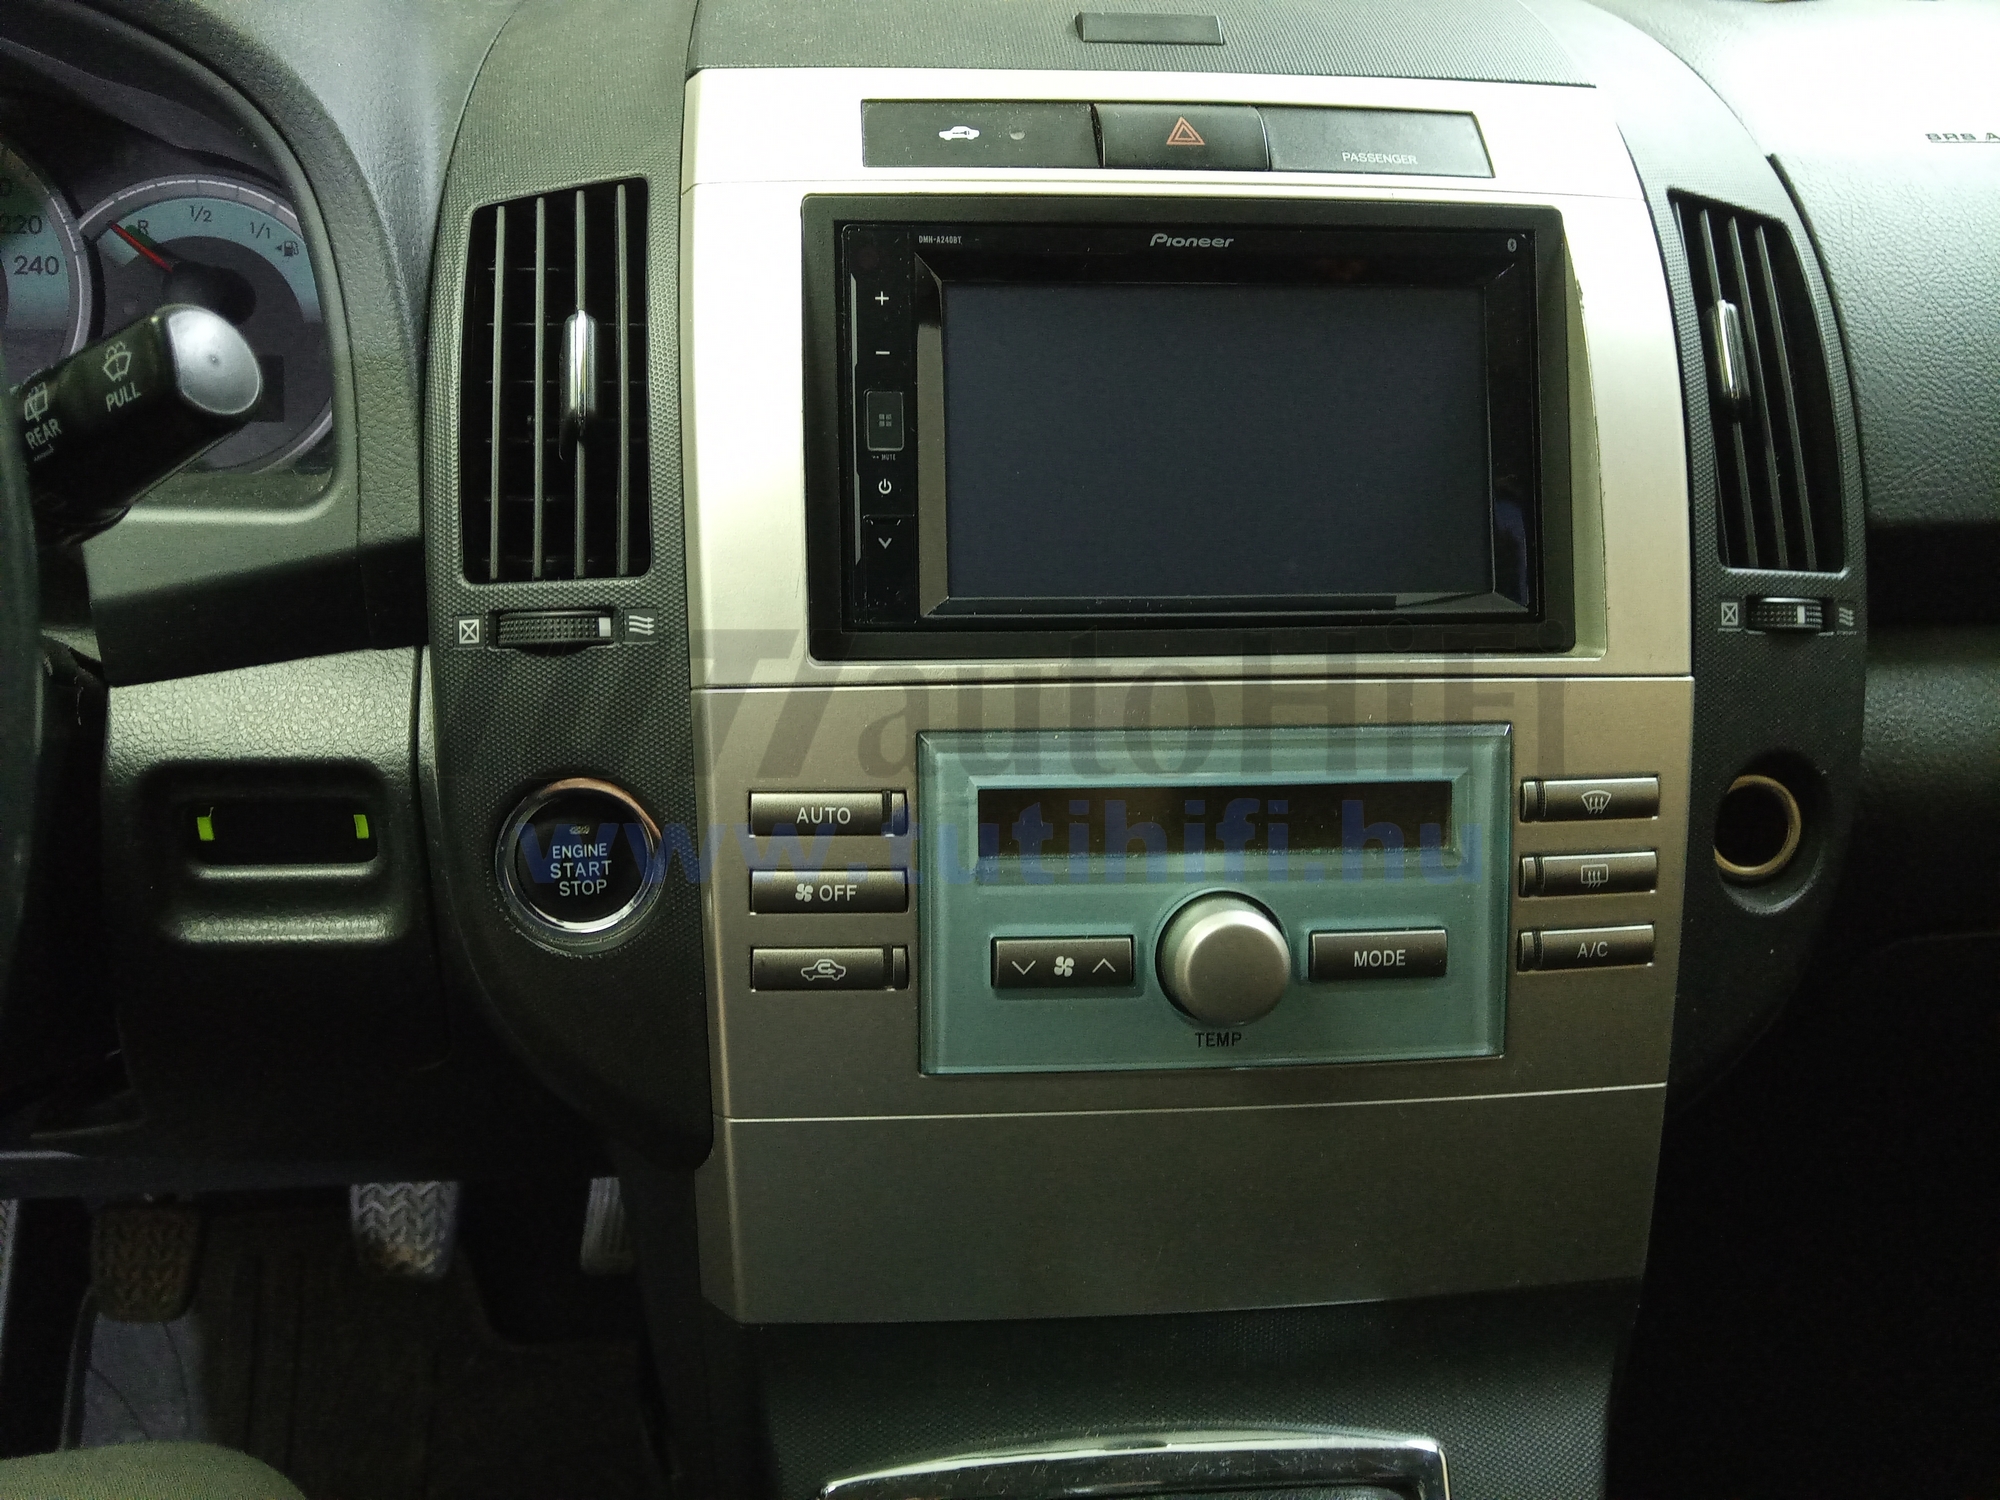 Toyota Corolla Verso DMH-A240BT multimédia tolatókamerával